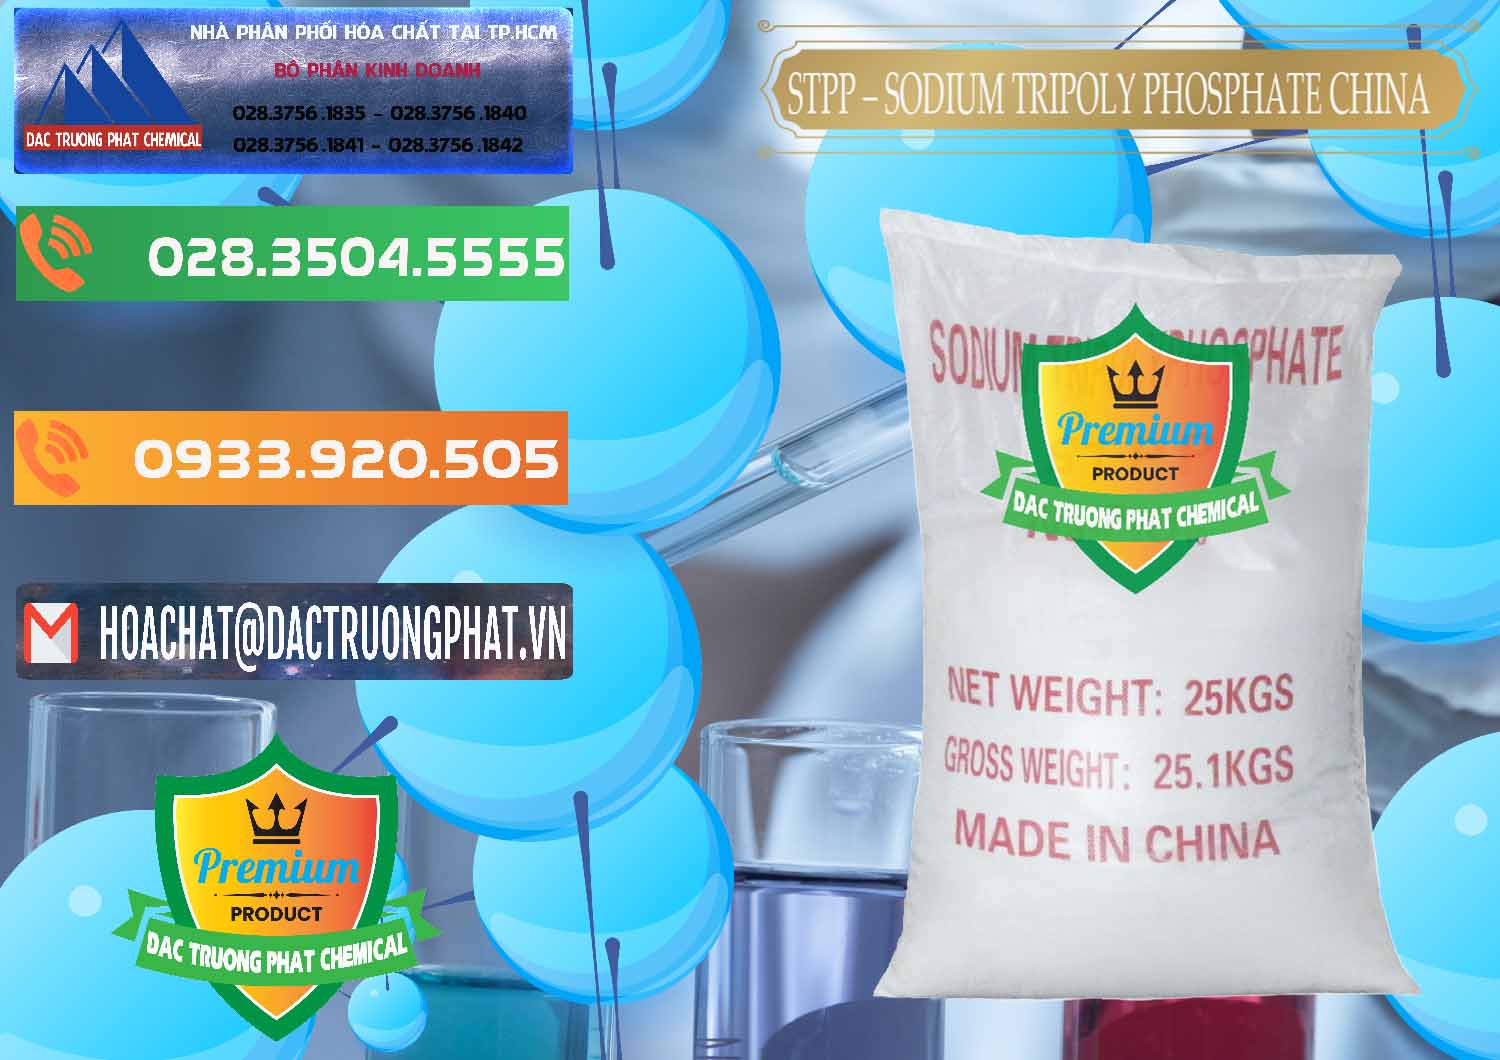 Chuyên nhập khẩu - bán Sodium Tripoly Phosphate - STPP 96% Chữ Đỏ Trung Quốc China - 0155 - Đơn vị chuyên kinh doanh _ cung cấp hóa chất tại TP.HCM - hoachatxulynuoc.com.vn